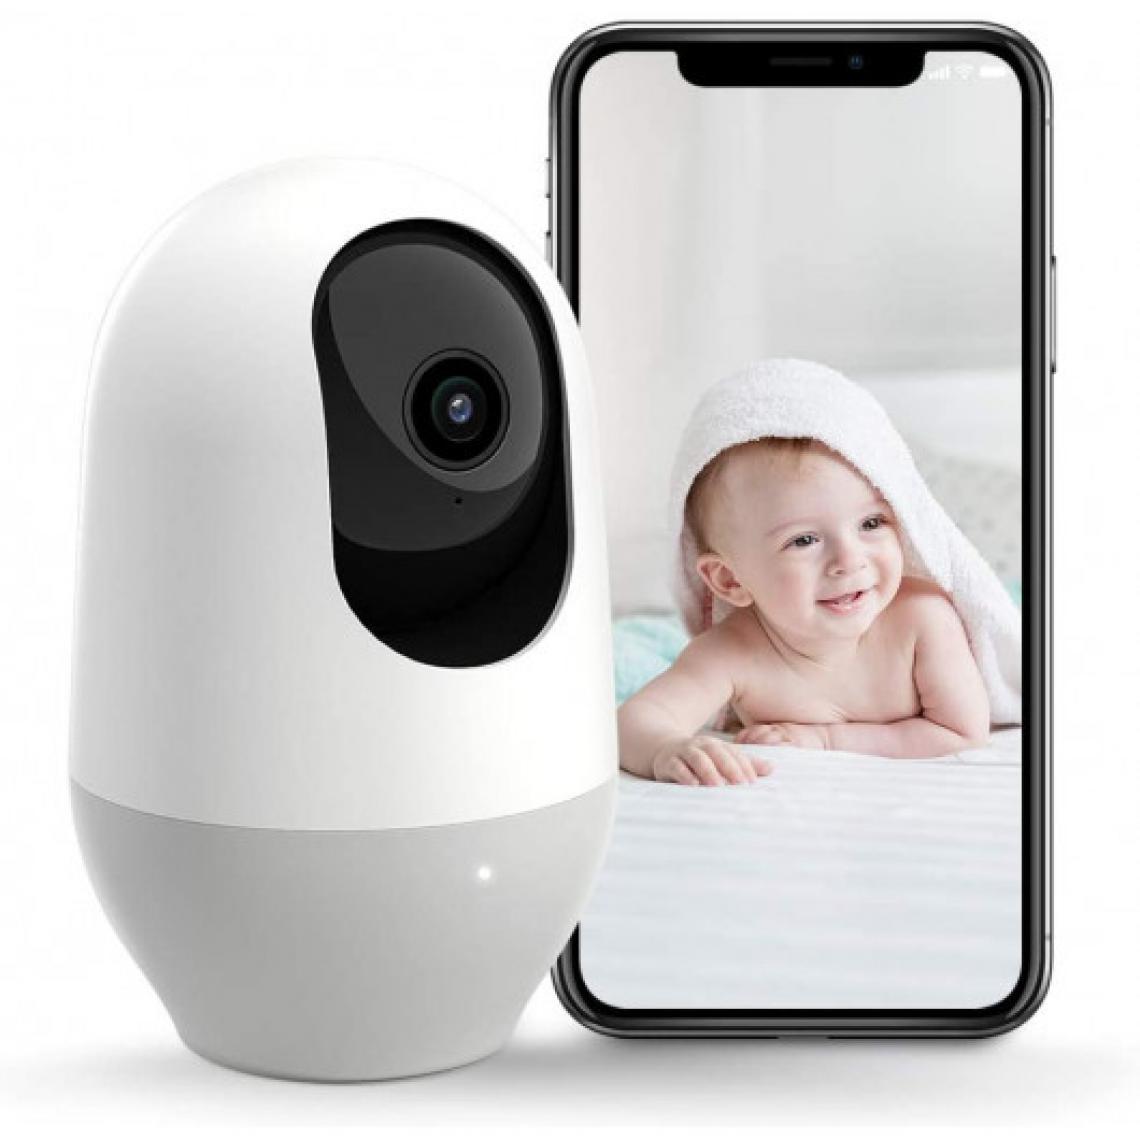 Ofs Selection - Nooie IPC100, la petite caméra wifi - Caméra de surveillance connectée